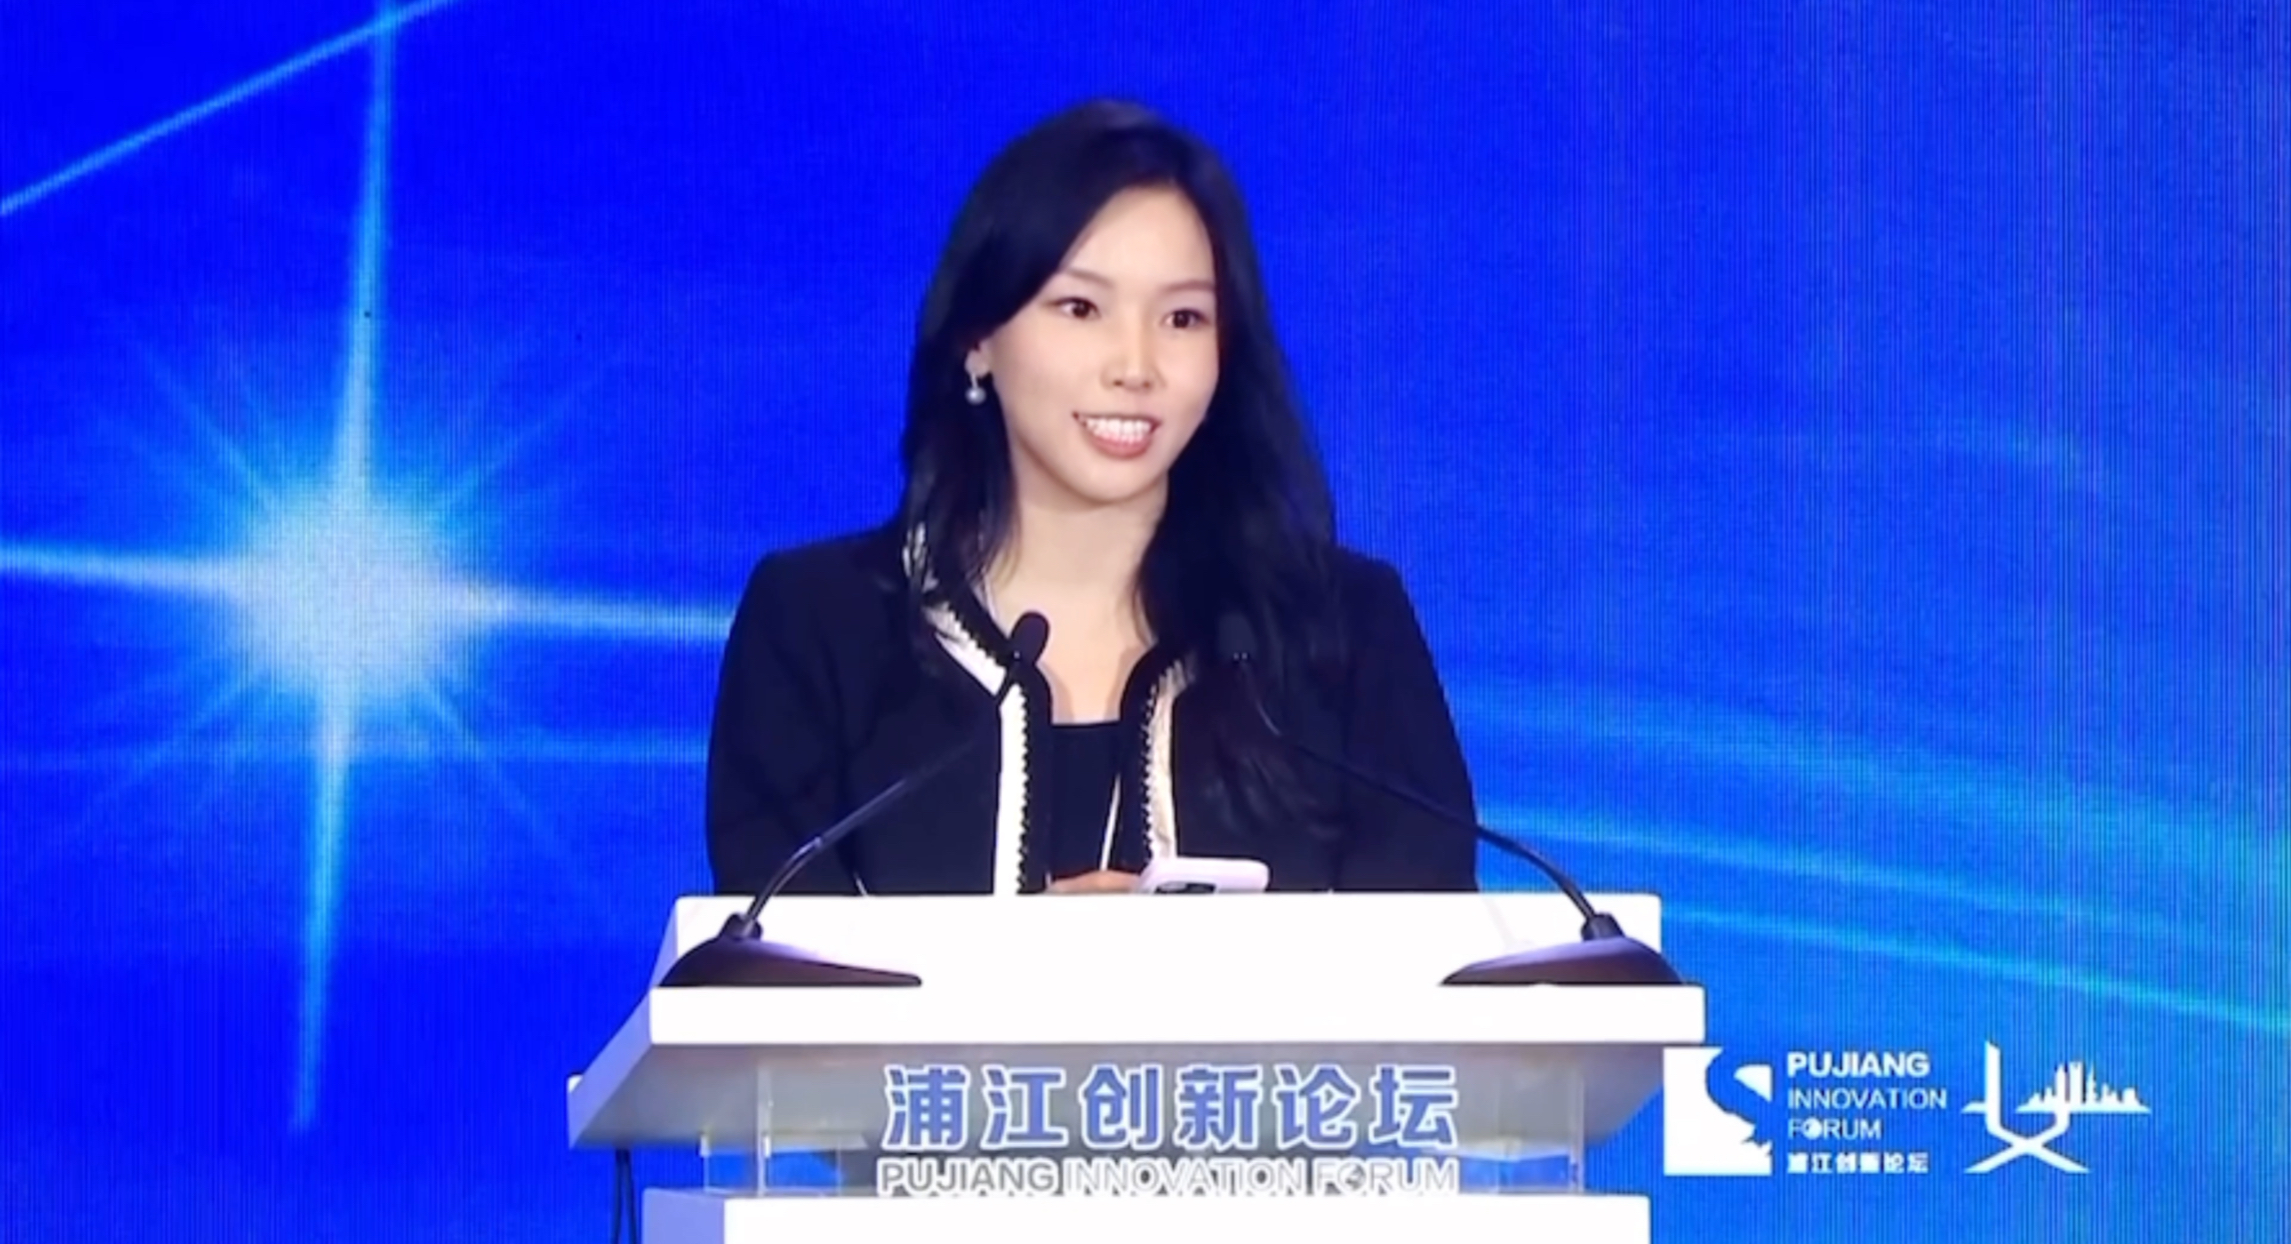 谢其润出席“浦江创新论坛·女科学家峰会”并发表主题演讲